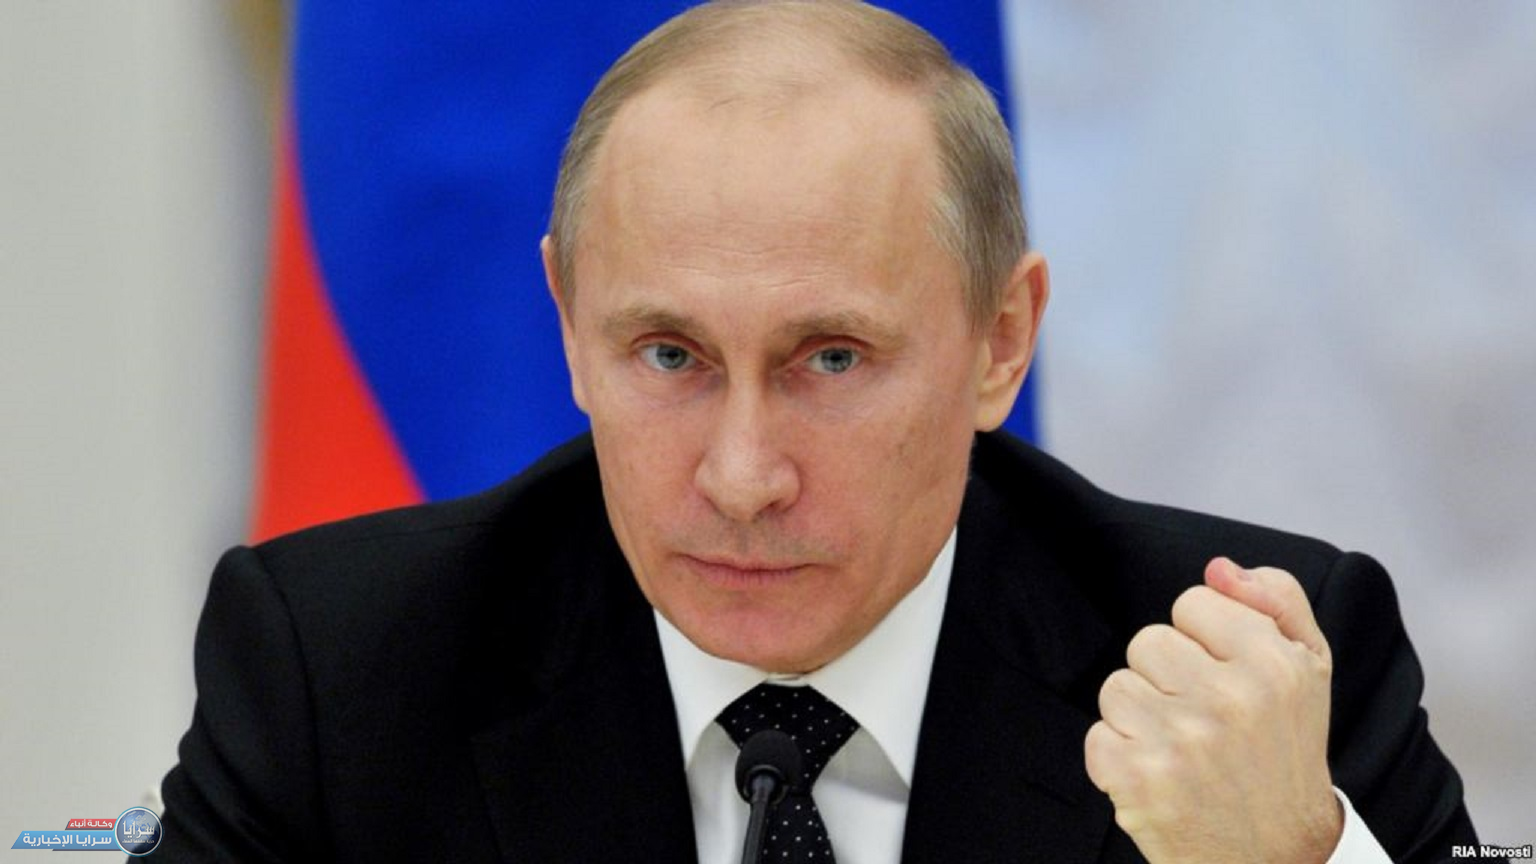 بوتين يتوعد من سيحاول الحيلولة دون العملية الروسية في أوكرانيا بـ"بردّ لم يواجهوه في تاريخهم" 